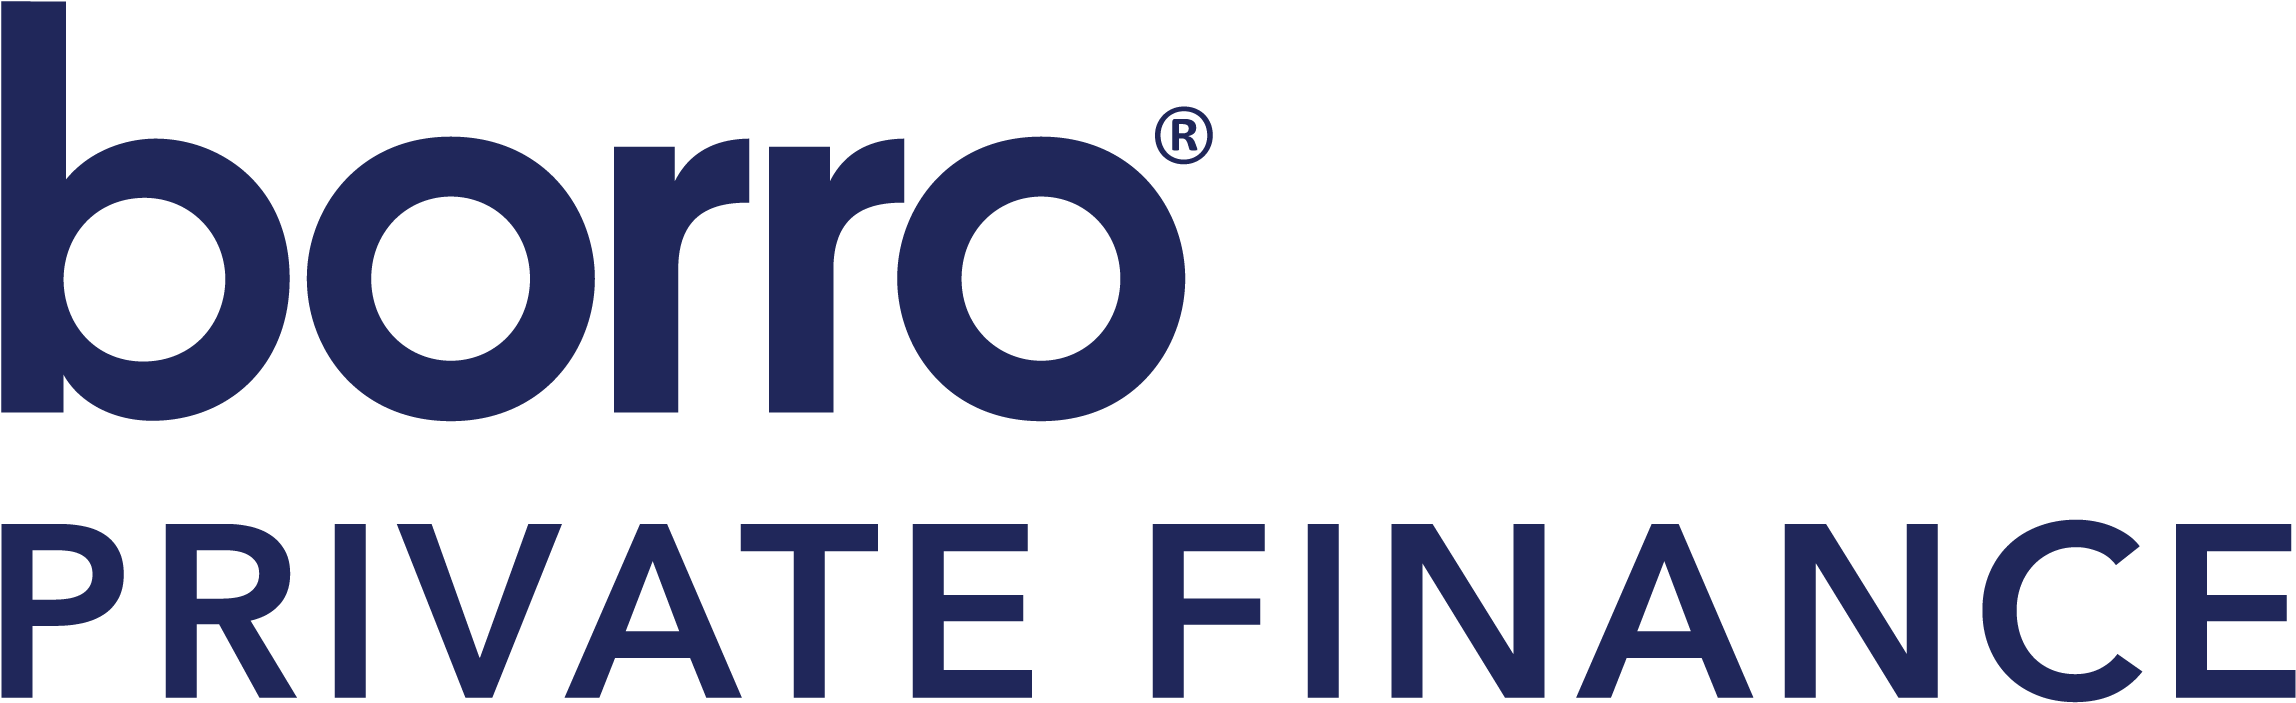 Borro Private Finance Logo Left Aligned - Borro Private Finance (2345x815)